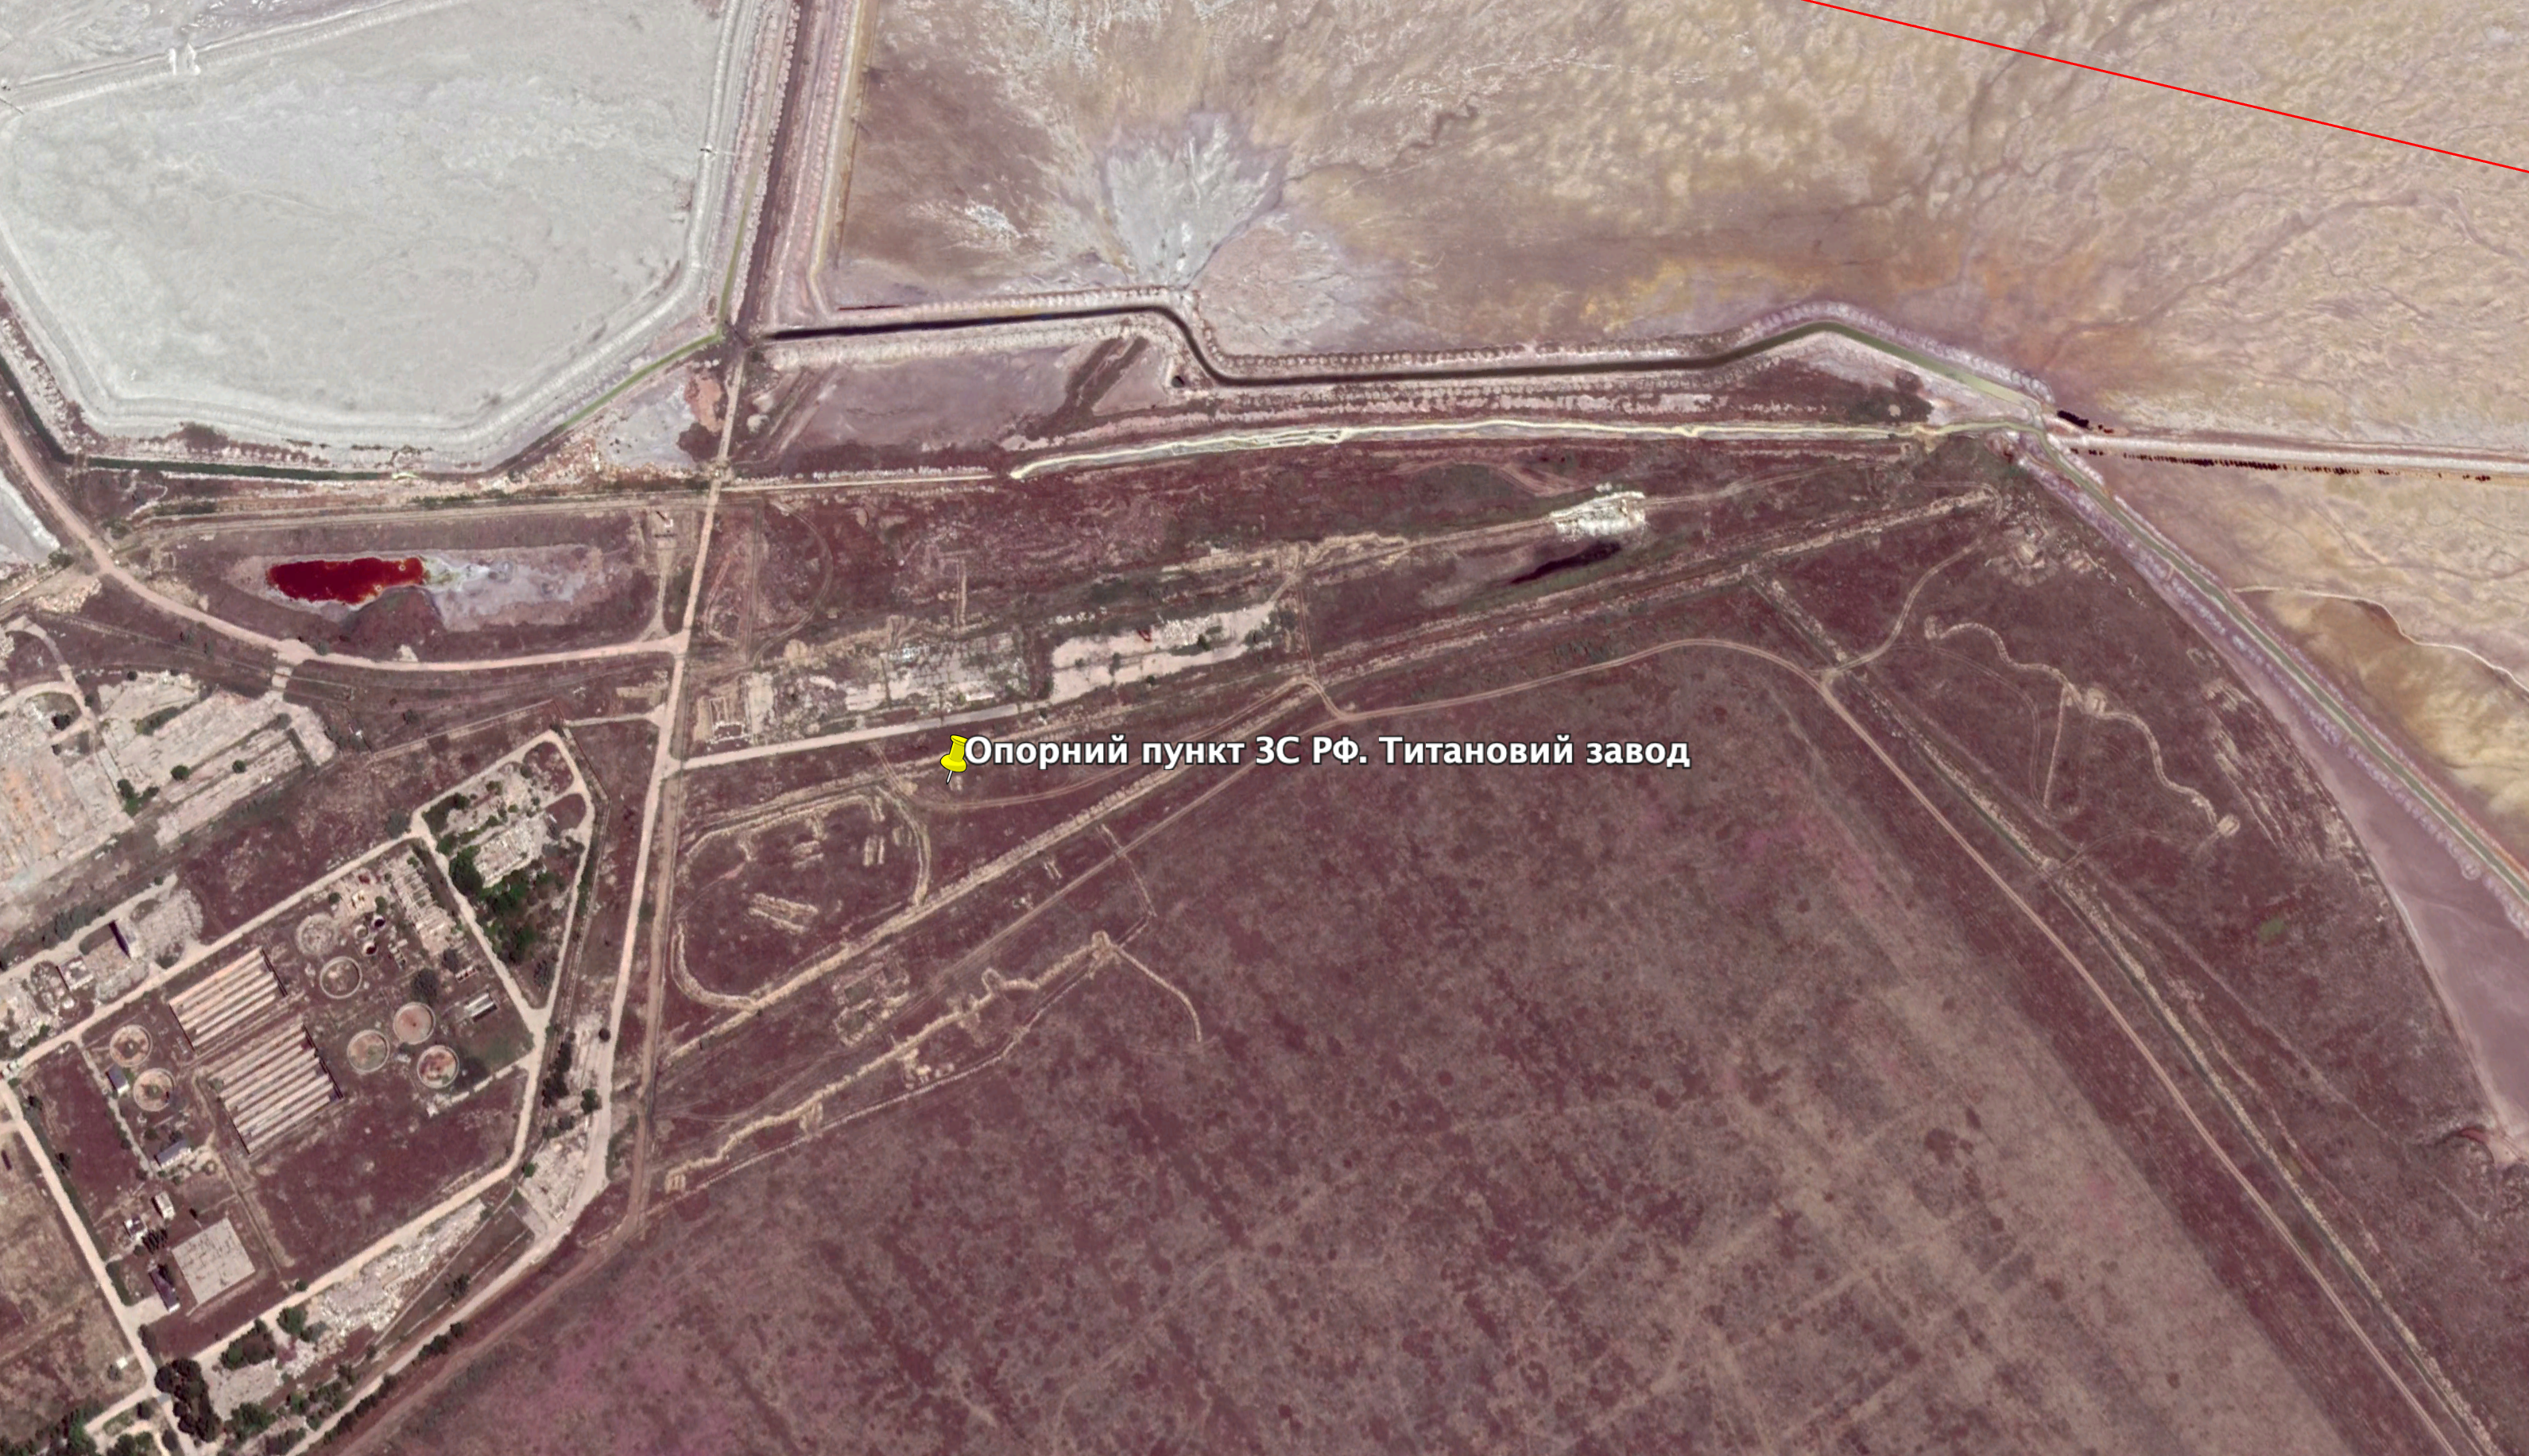 Опорний пункт ЗС РФ. Титановий завод Фото: Google Earth